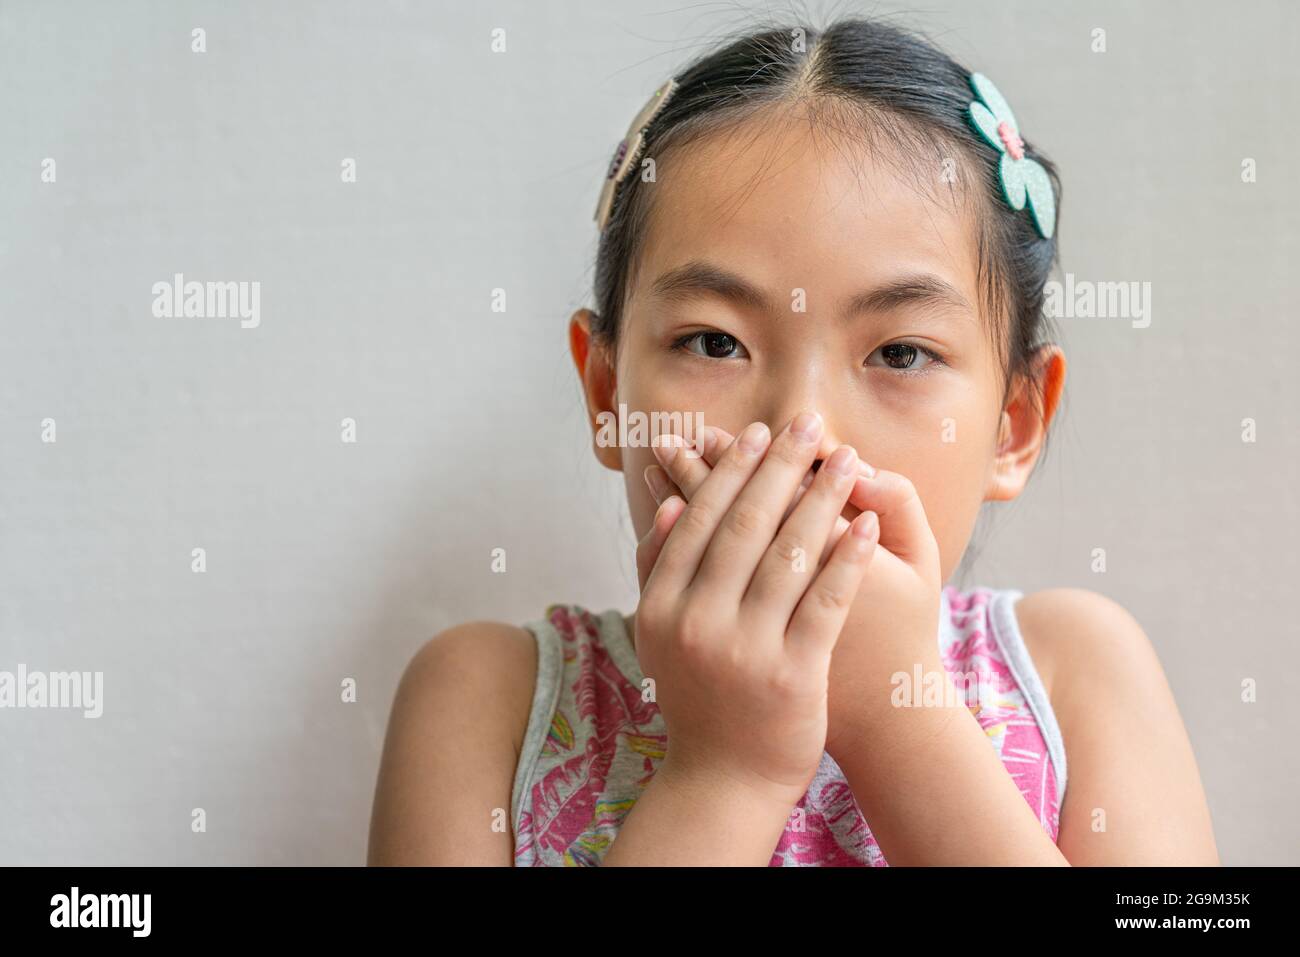 Primo piano ritratto di bambina asiatica con capelli lunghi neri legati, coprendo la bocca con due mani. Foto Stock